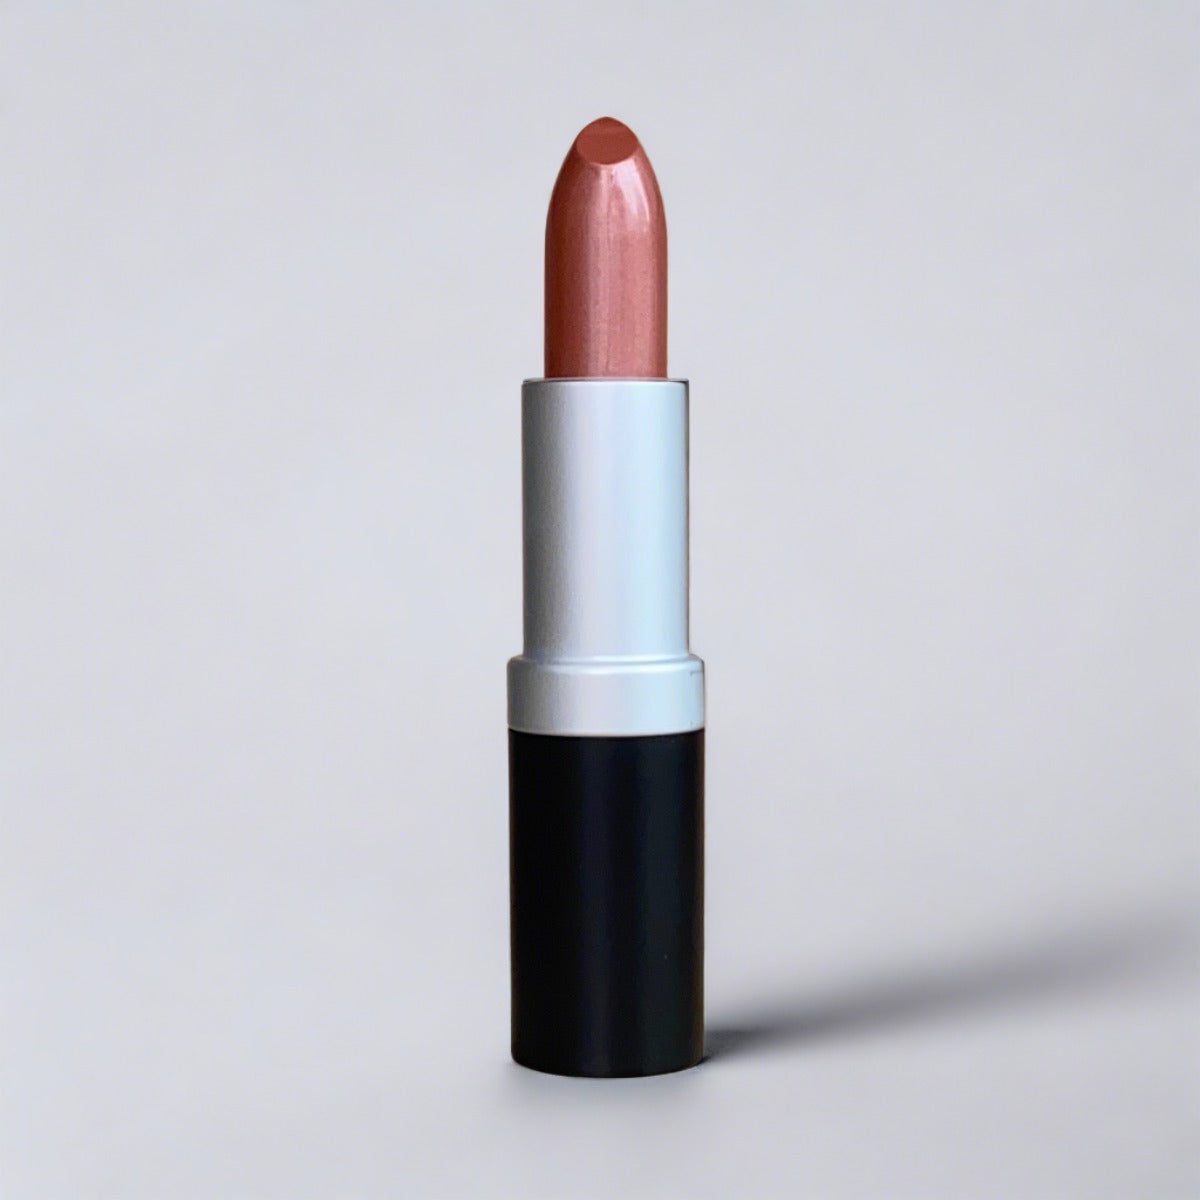 Perfection, a Natural copper colored lipstick